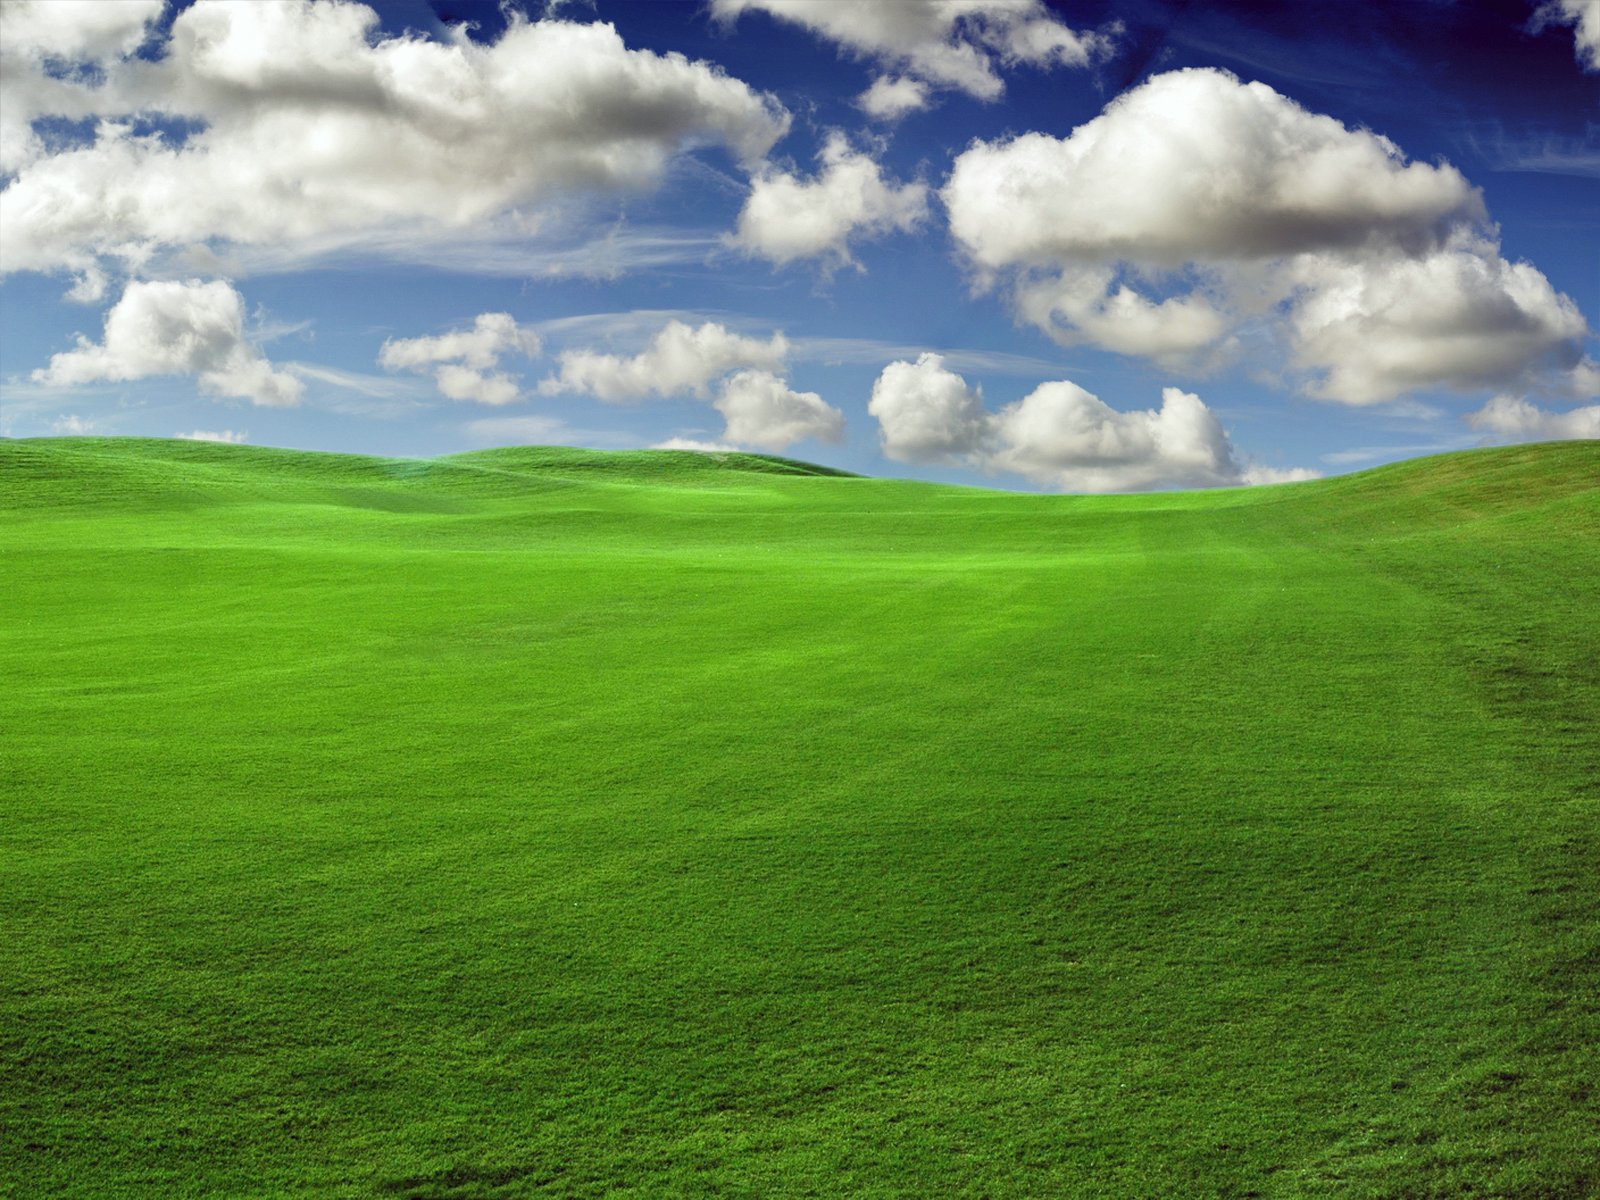 Rumput hijau nan menyejukkan Foto2 Indah